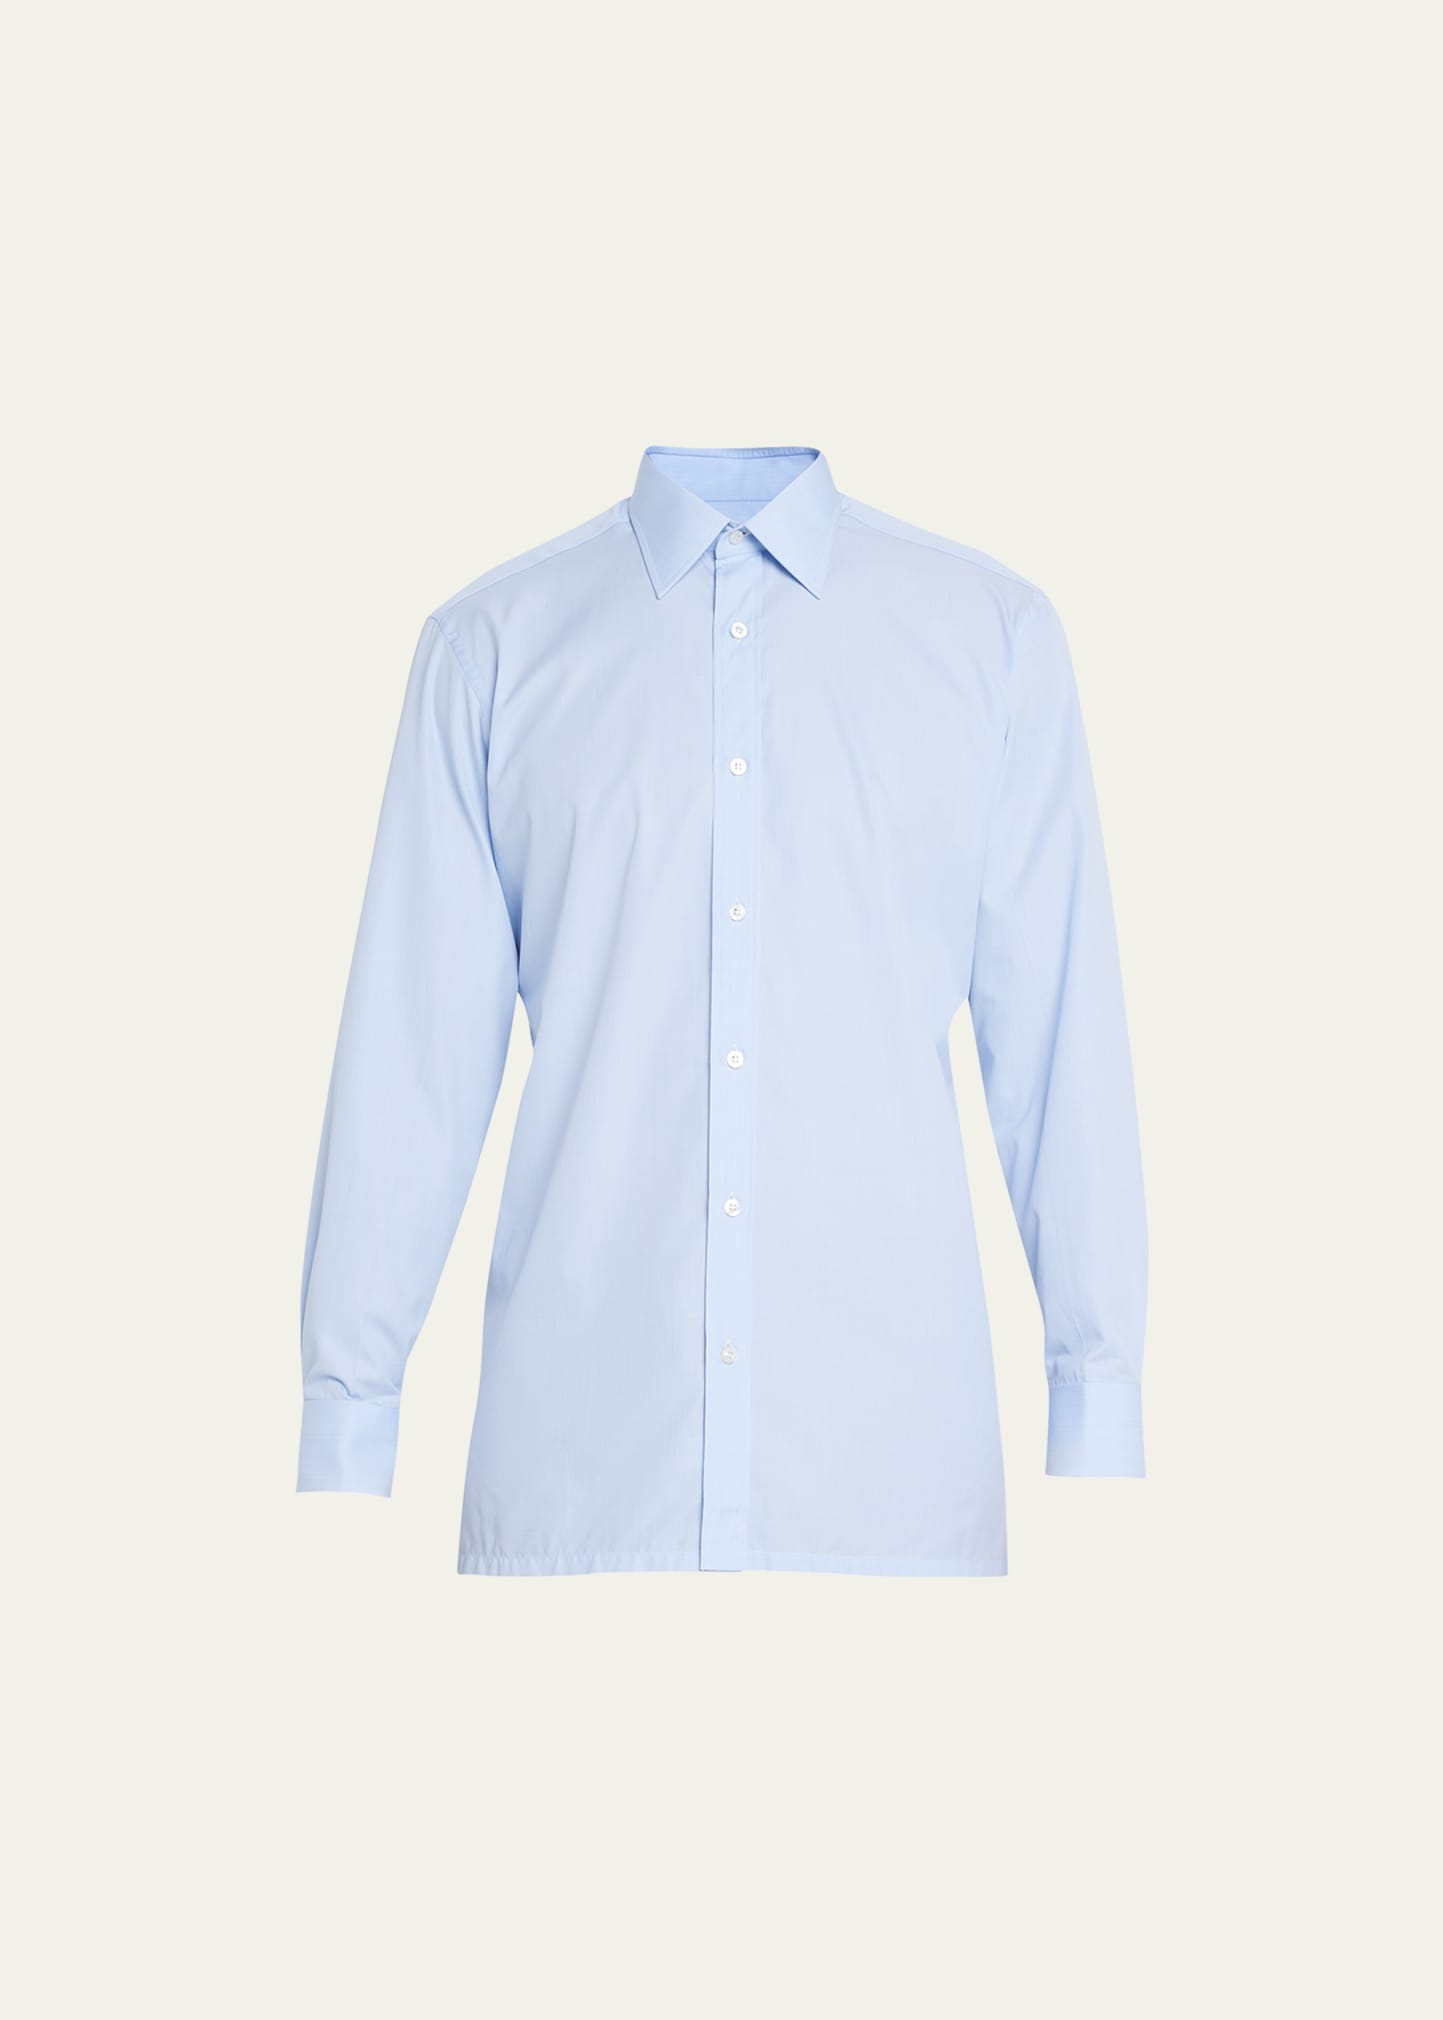 Charvet Men's Point Collar Cotton Dress Shirt